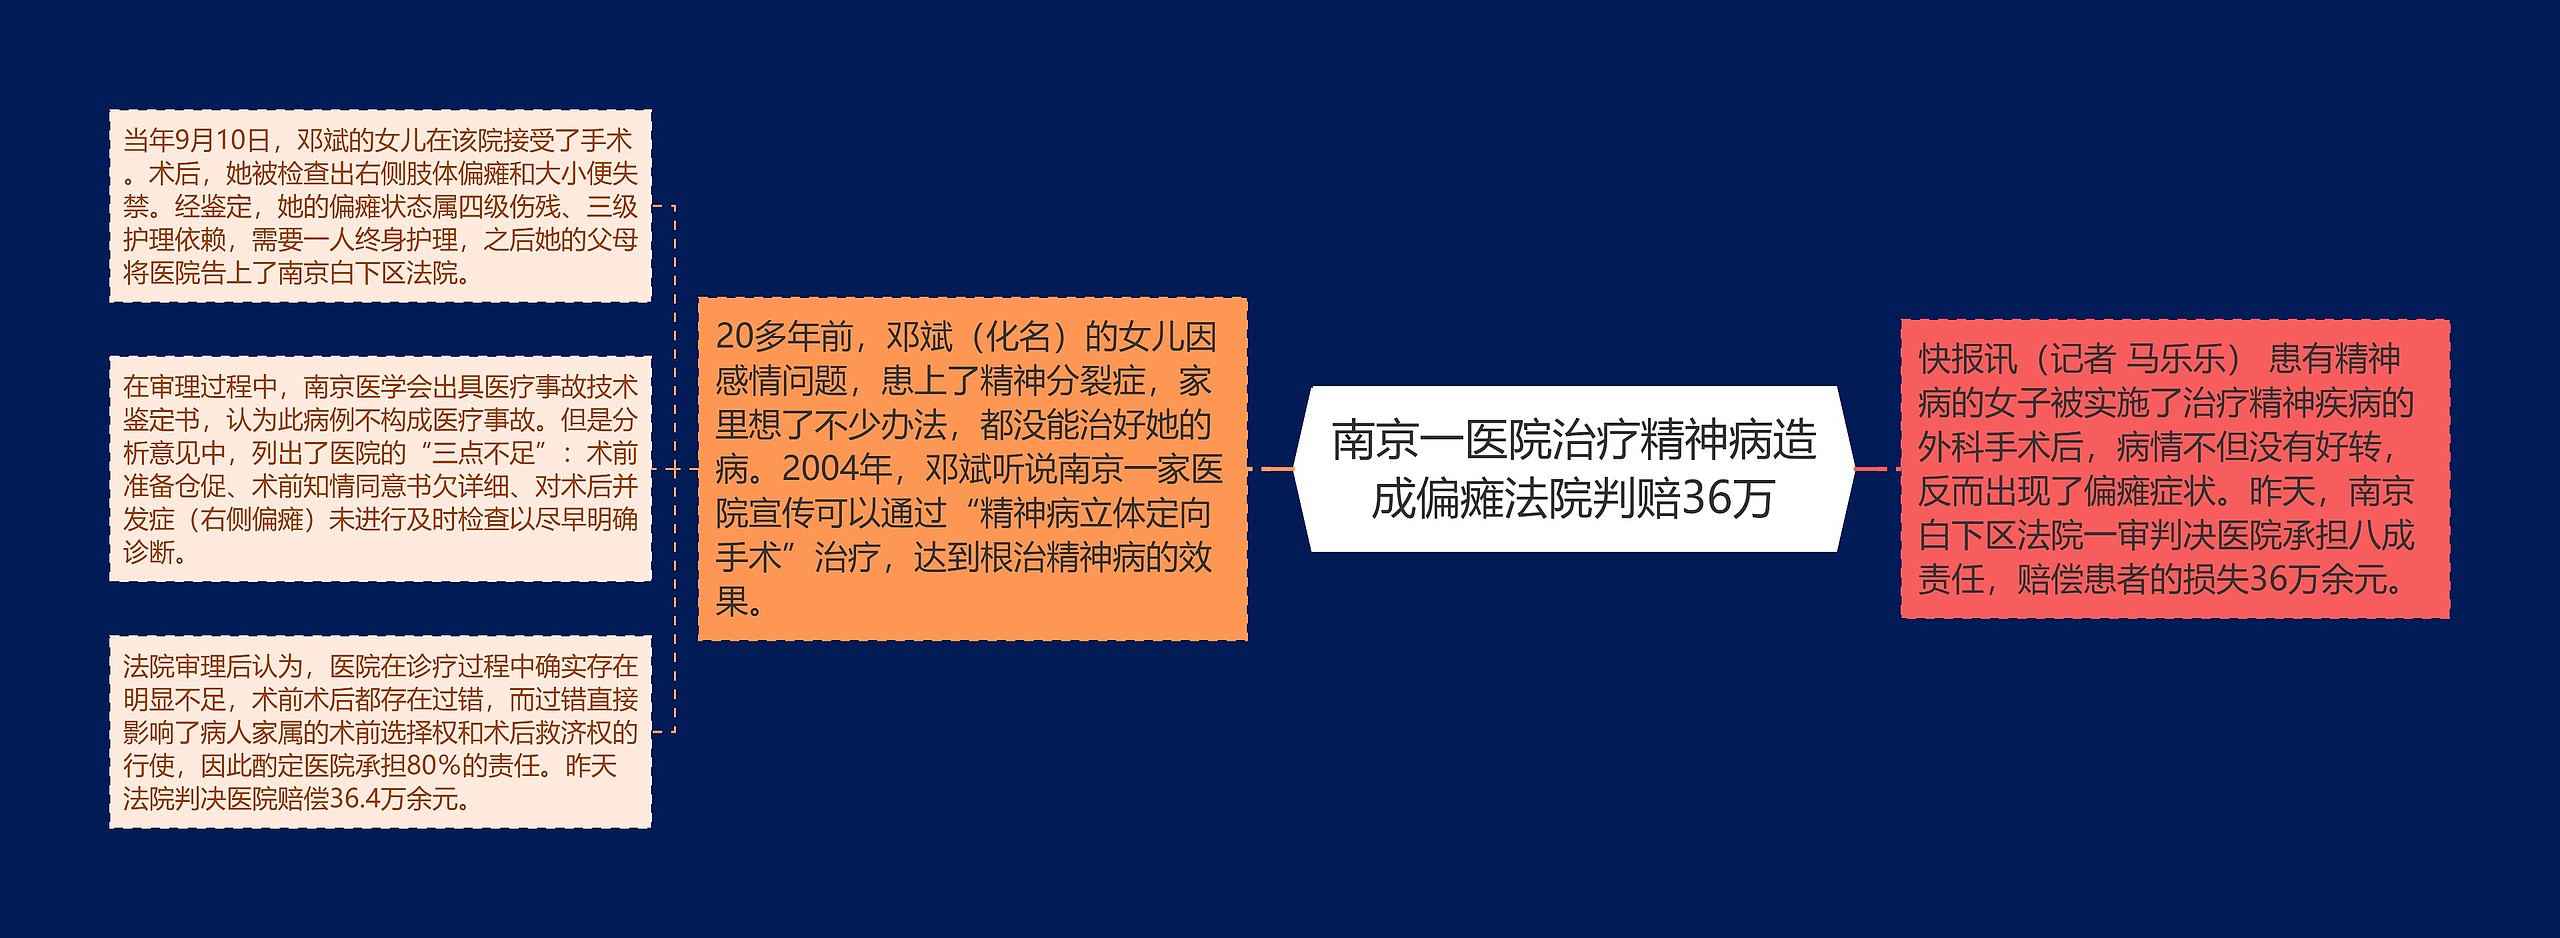 南京一医院治疗精神病造成偏瘫法院判赔36万